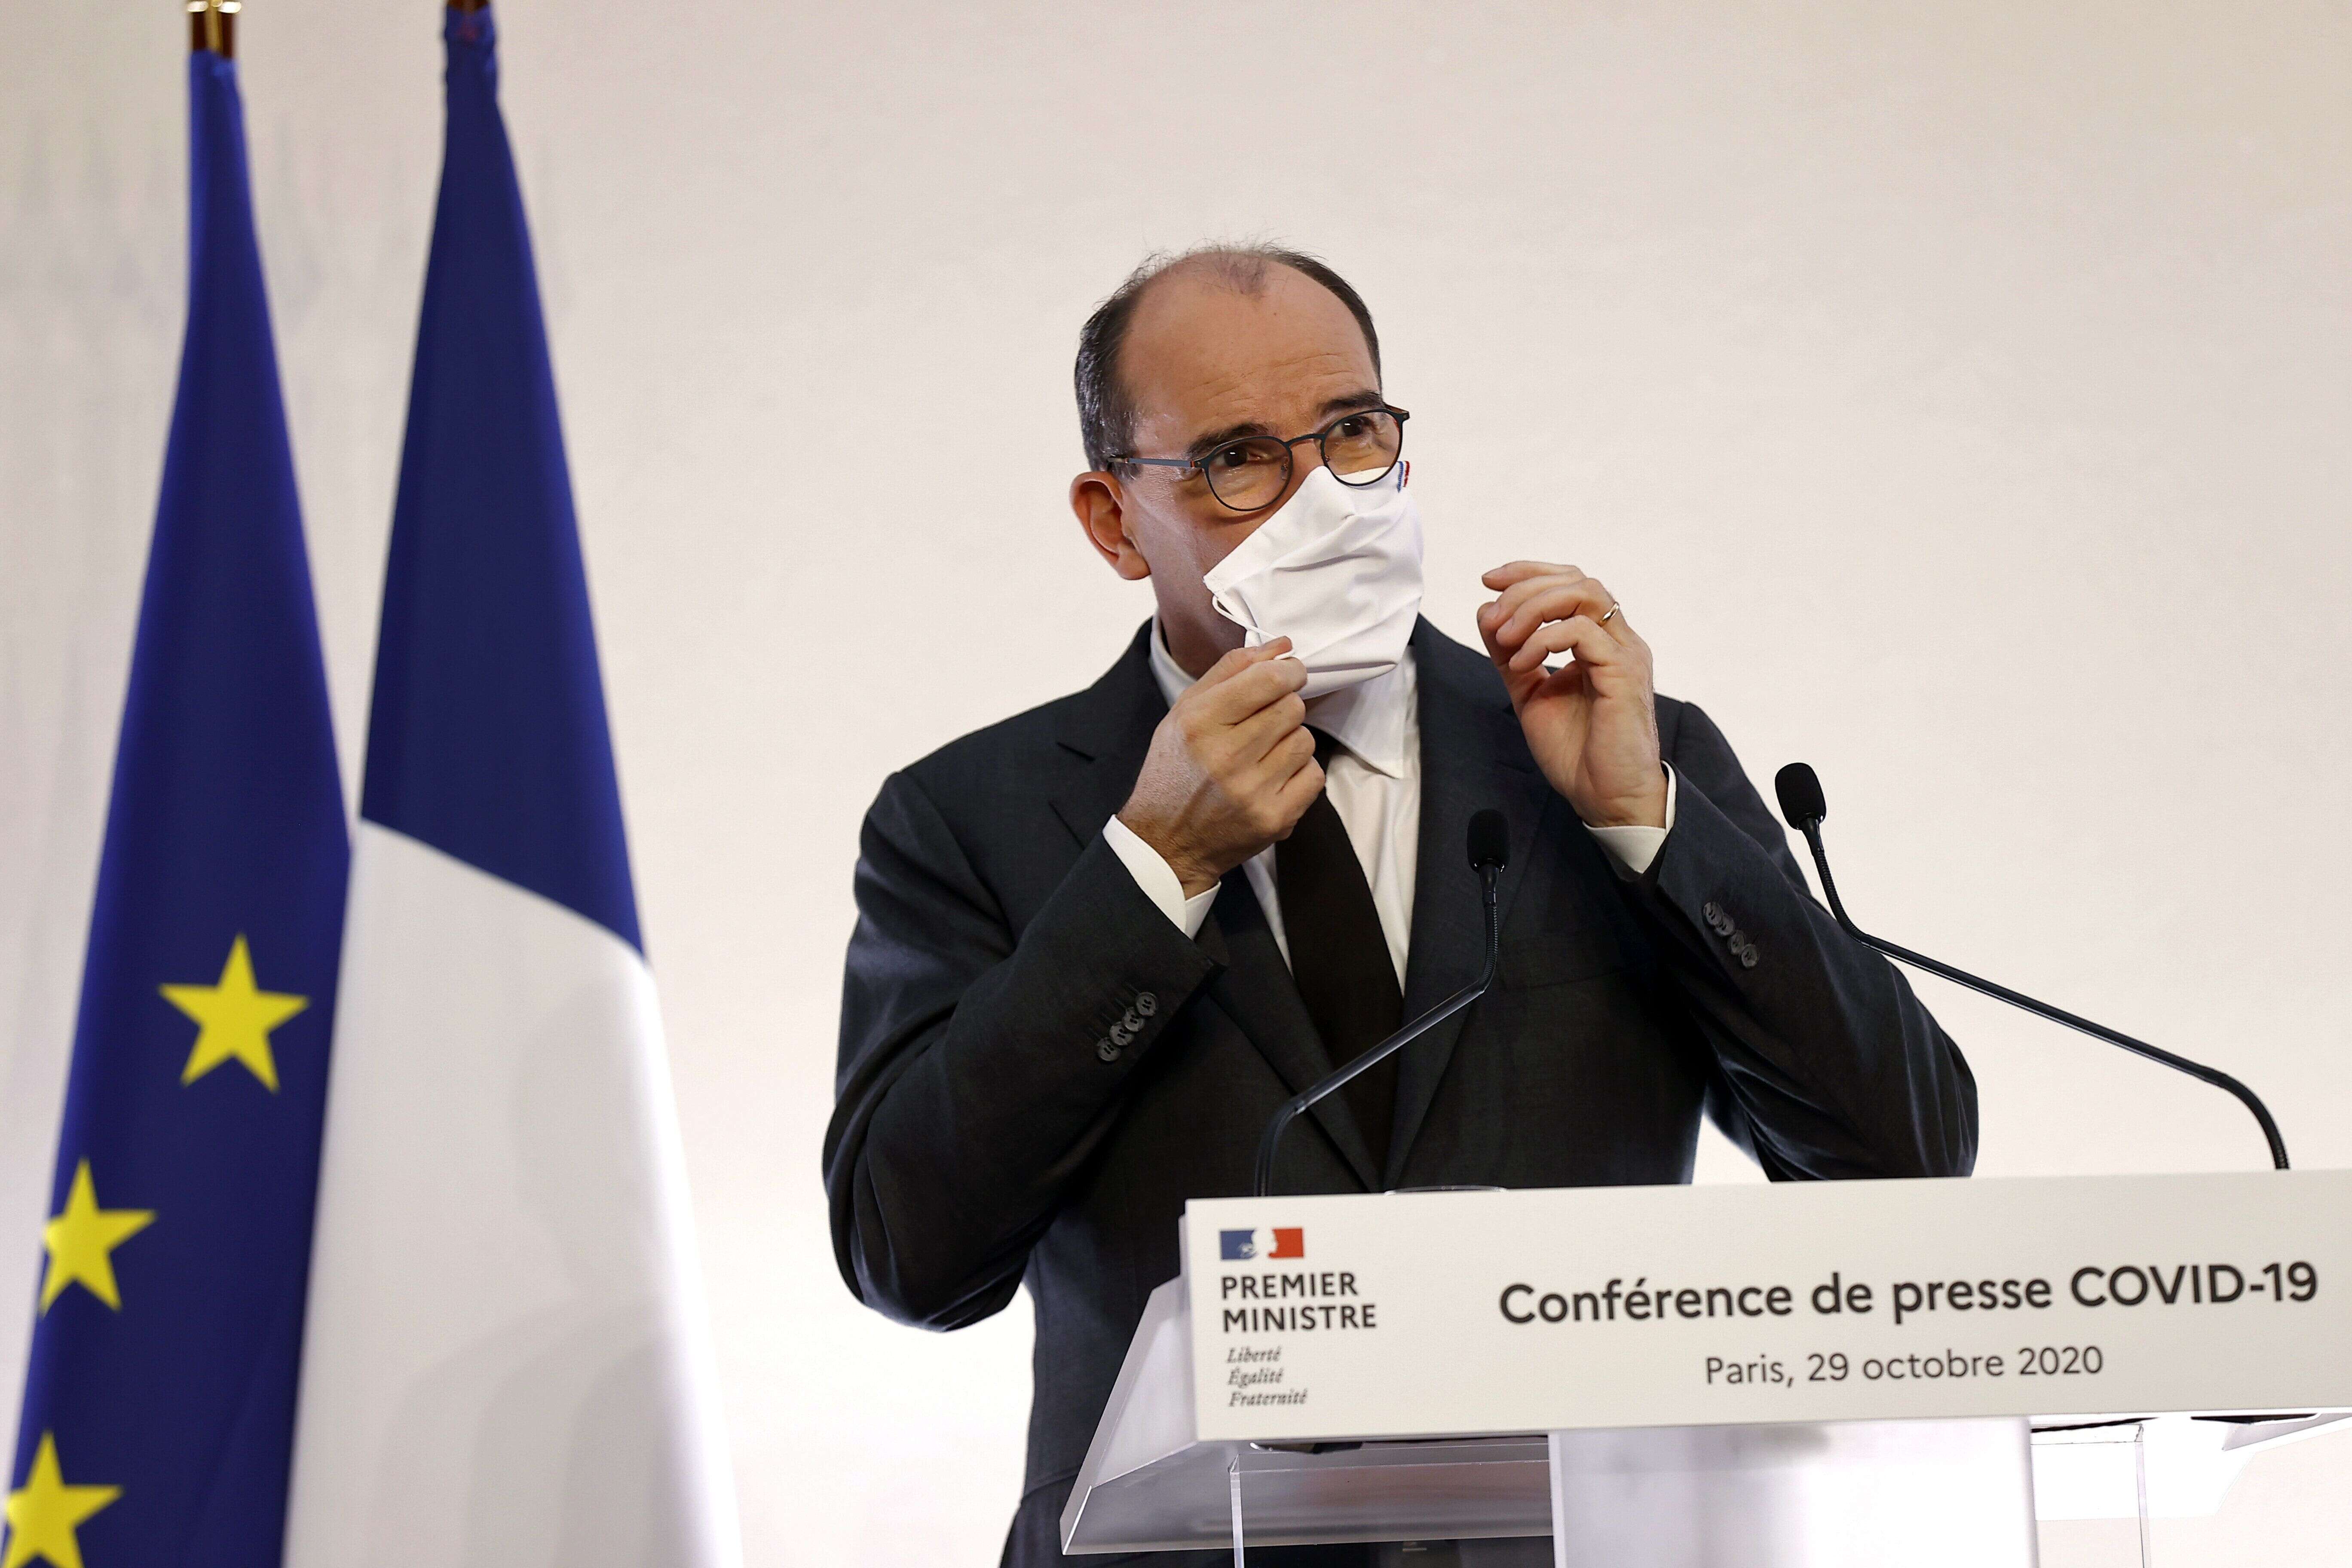 Le Premier ministre Jean Castex lors d'une conférence de presse sur le reconfinement, le 29 octobre 2020.